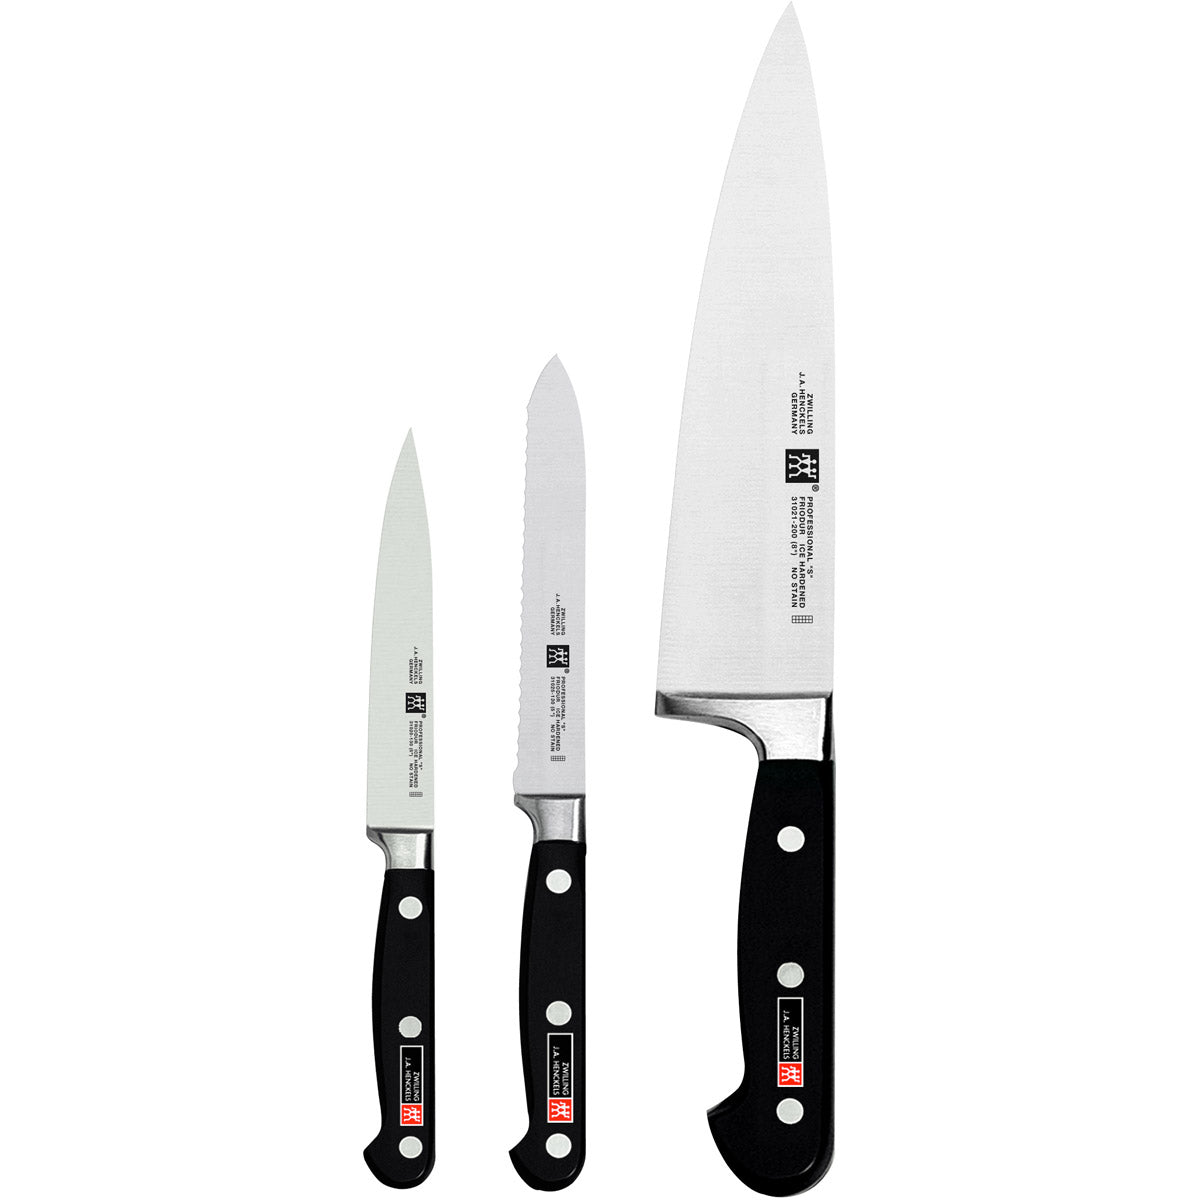 https://shophorne.com/cdn/shop/products/ja-henckels-professional-s-3-piece-starter-knife-set-850186.jpg?v=1678751012